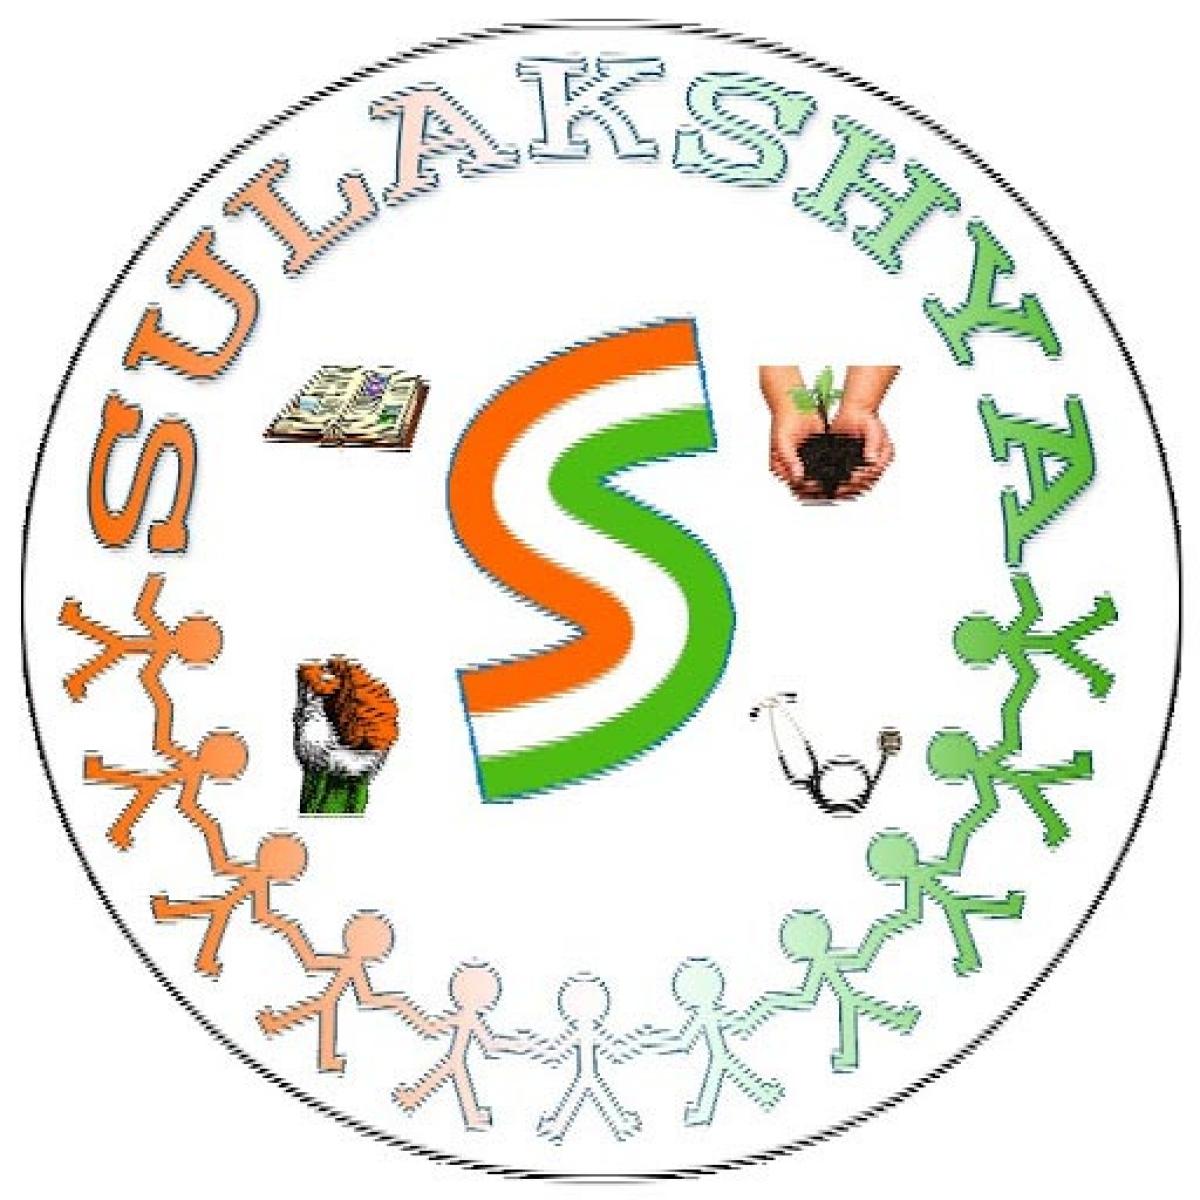 Services of Sulakshya Seva Samithi lauded